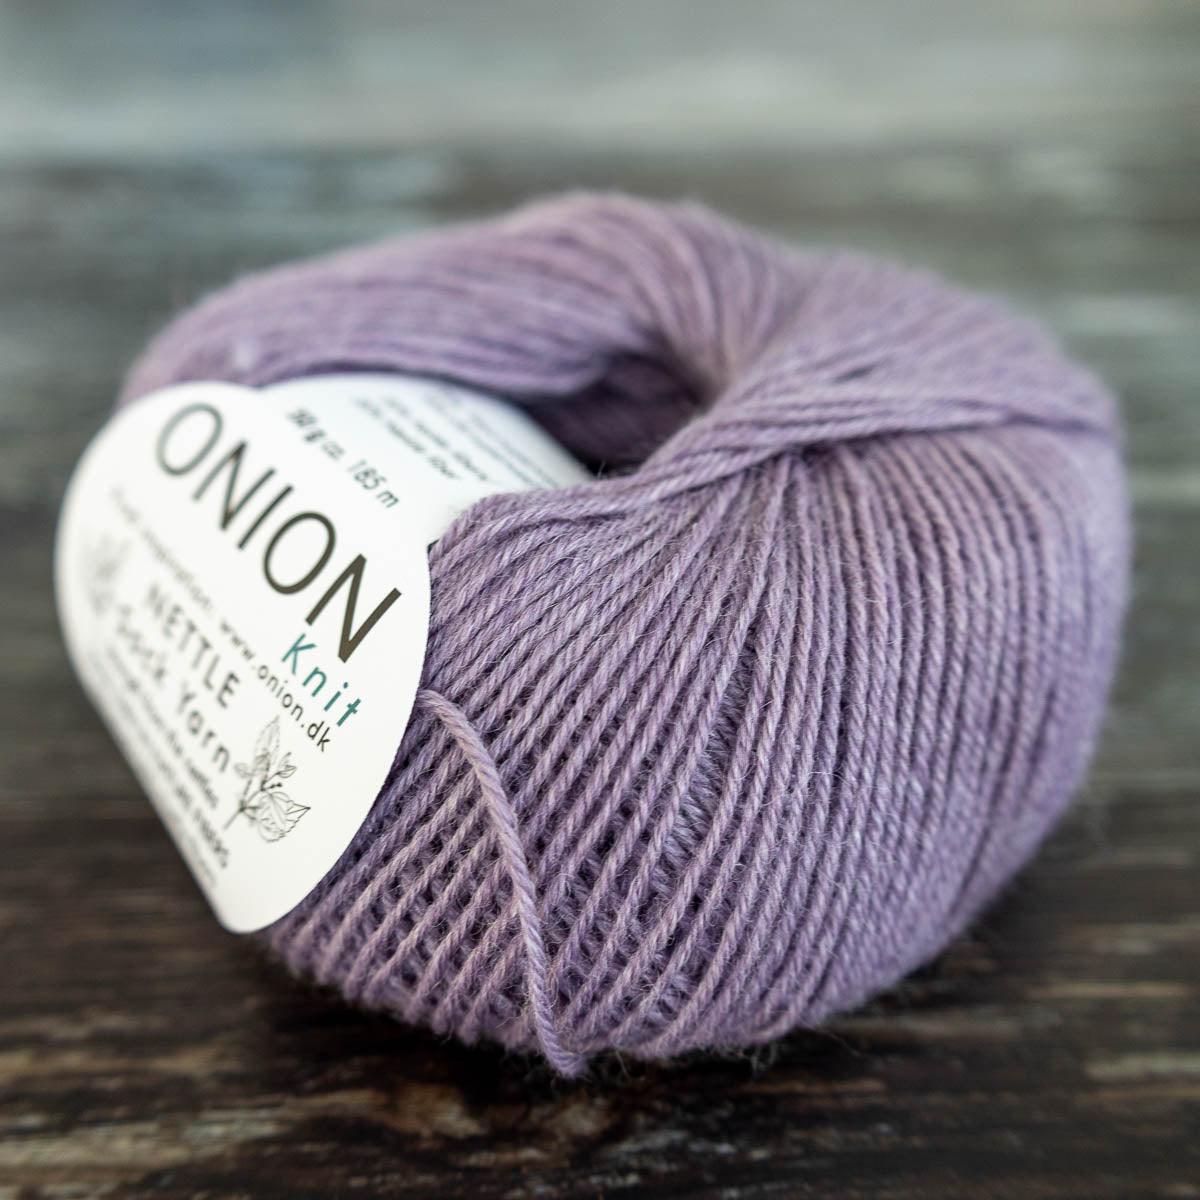 Onion Onion Nettle Sock Yarn - 1007 lys lilla - Yarn